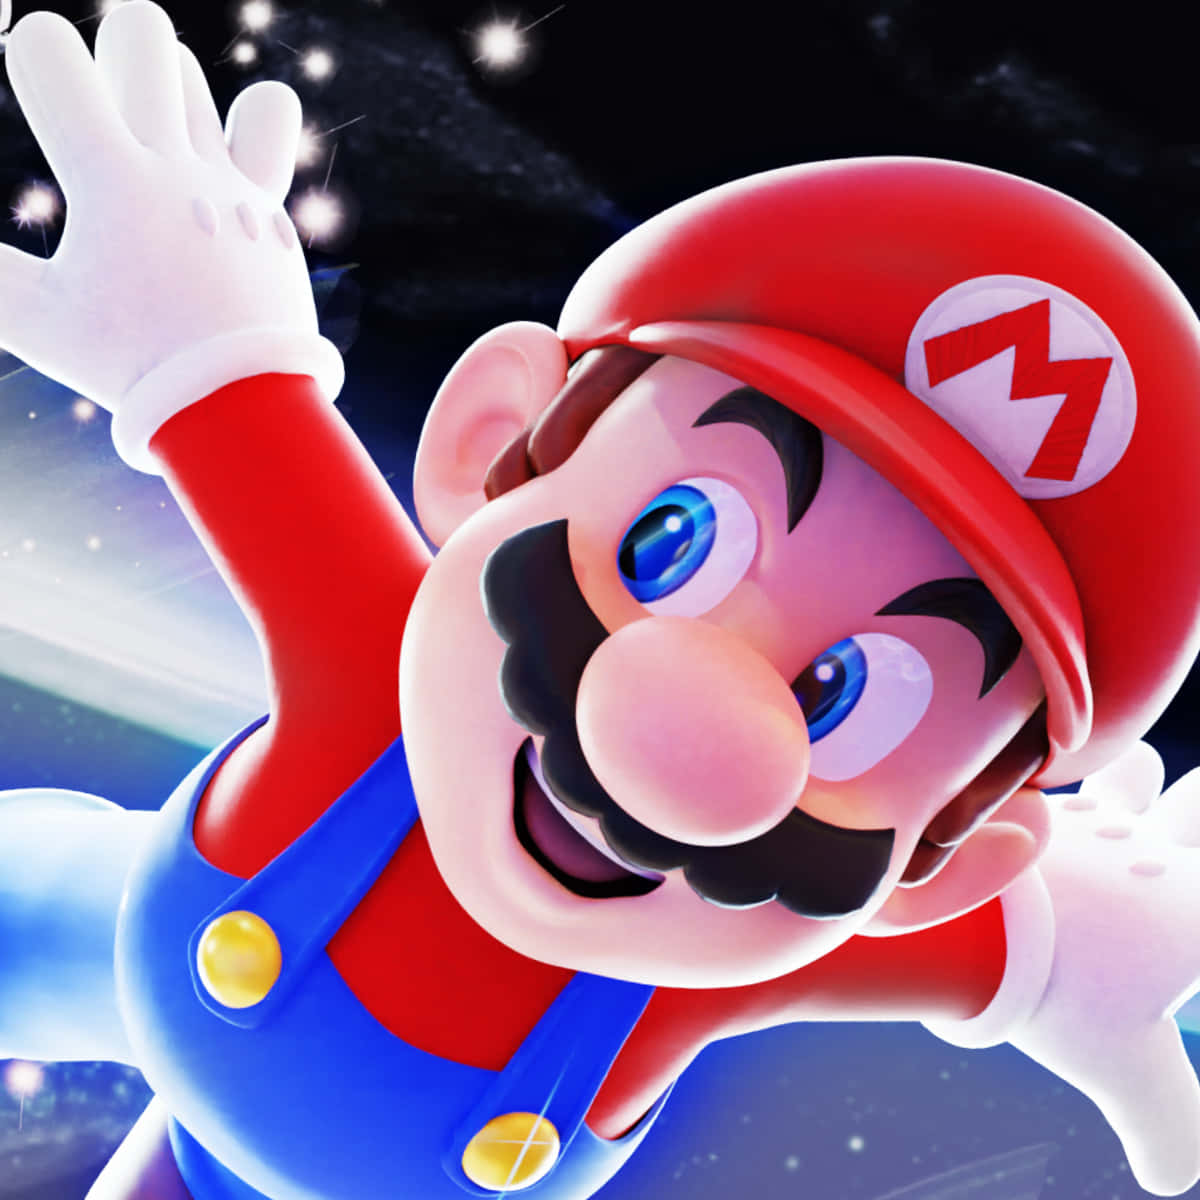 Upptäckrymdens Underverk Med Super Mario Galaxy Som Bakgrundsbild På Din Dator Eller Mobil! Wallpaper